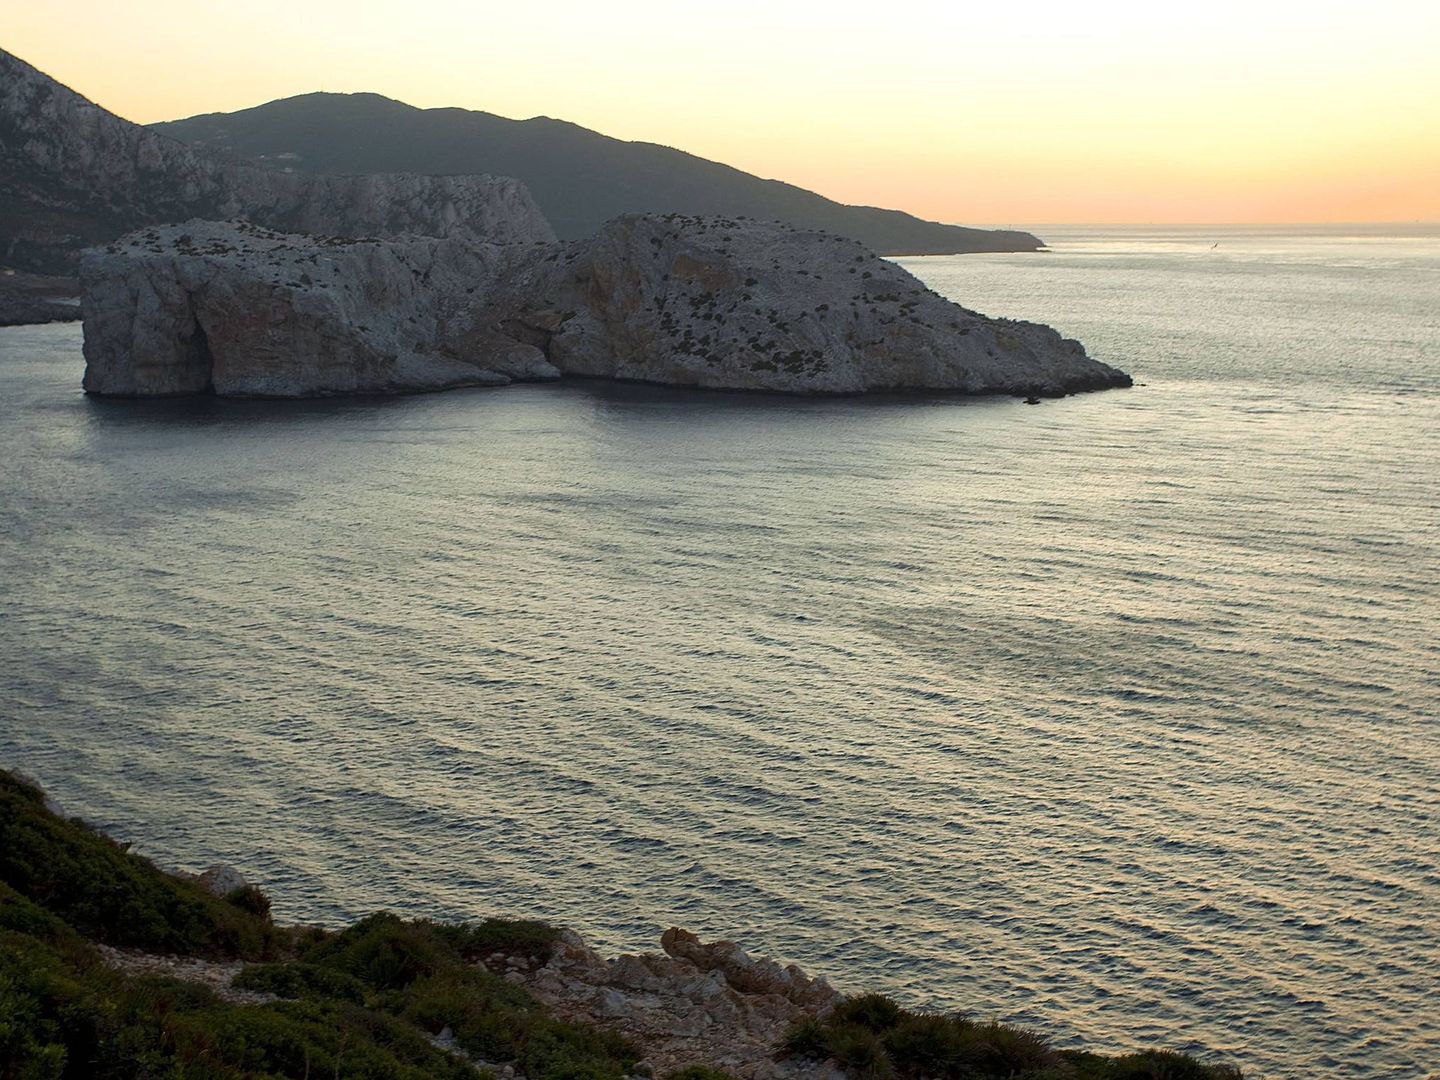 Vista del estrecho de Gibraltar desde la costa marroquí, junto al islote de Perejil. (EFE)